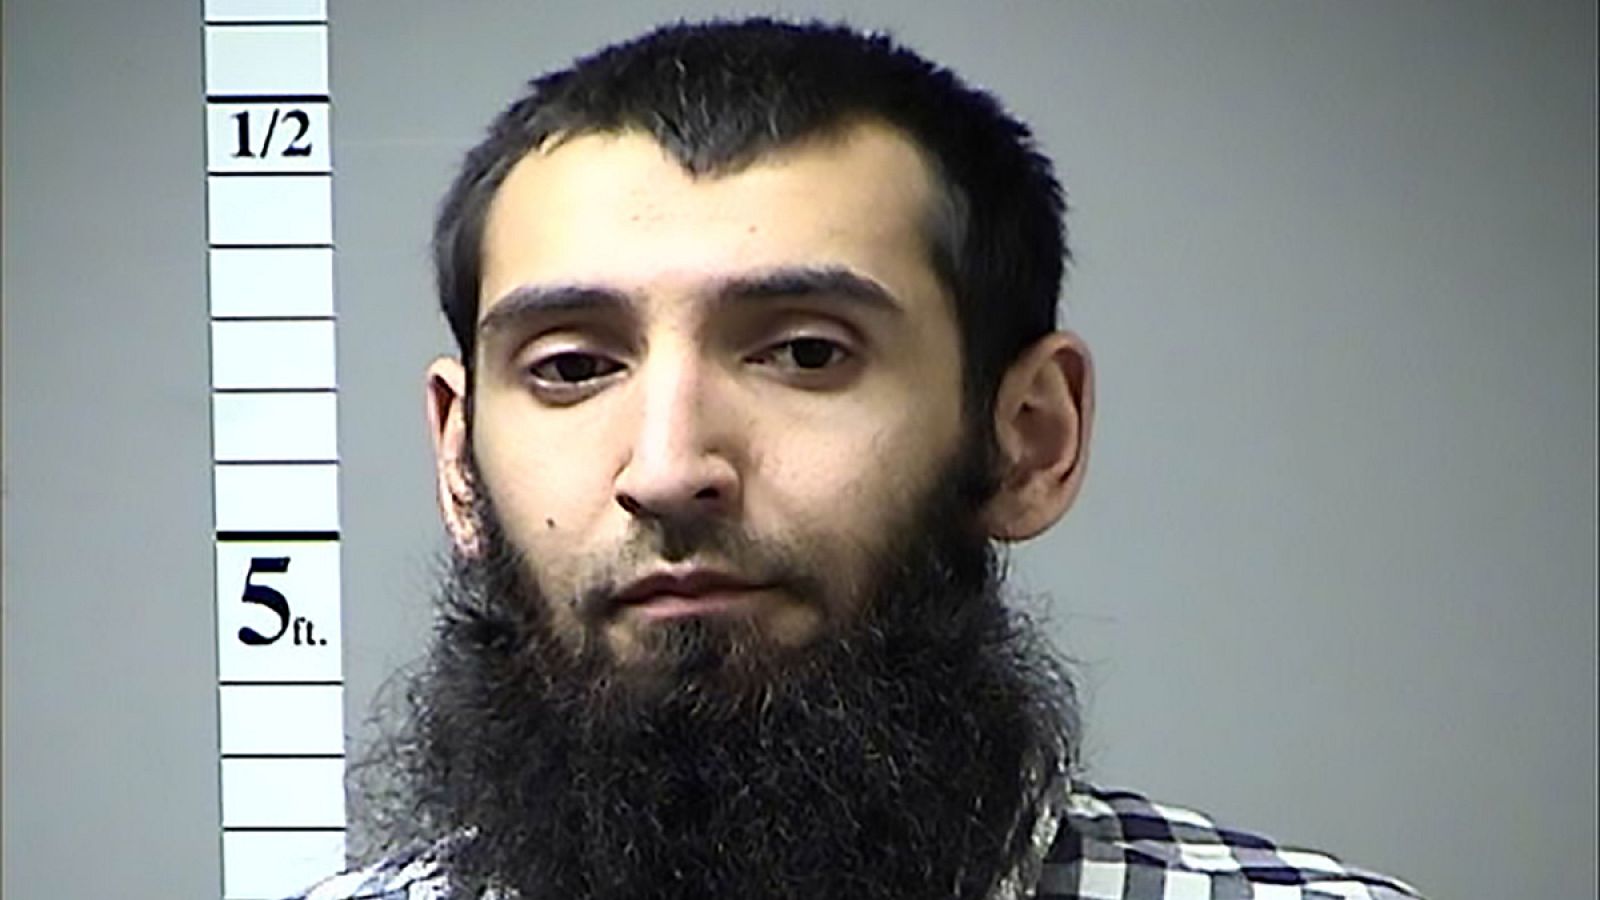 Safyullo Saipov, de nacionalidad uzbeka, identificado como presunto autor del atentado de Nueva York.